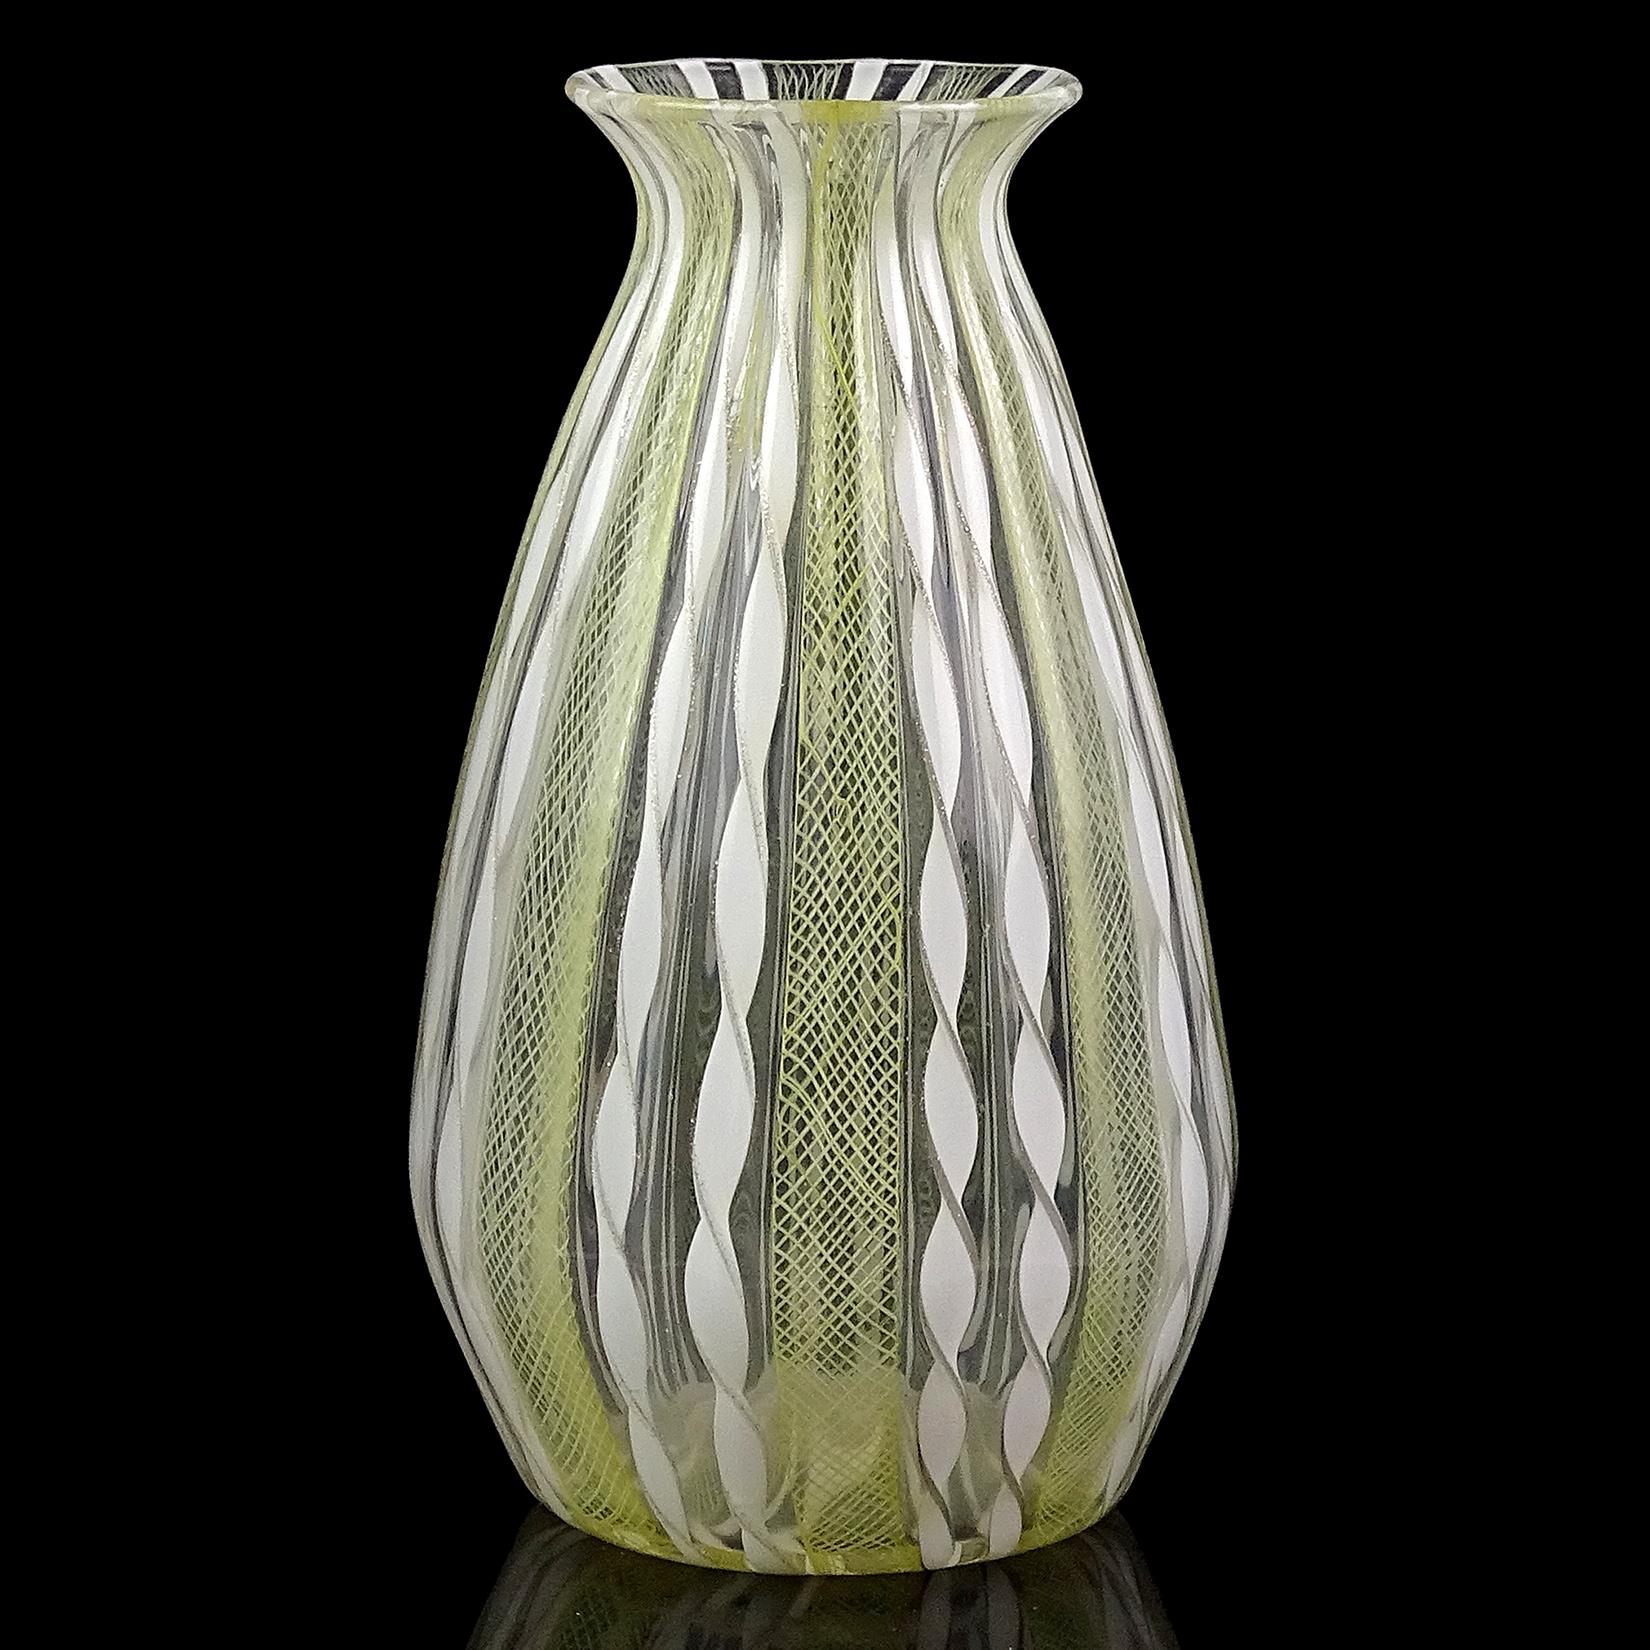 Magnifique vase d'art italien en verre soufflé à la main de Murano, avec des rubans jaunes et blancs. Créé avec des rubans alternés en filet Zanfirico jaune, et des rubans torsadés blancs avec des garnitures en aventurine argentée. Il a un petit